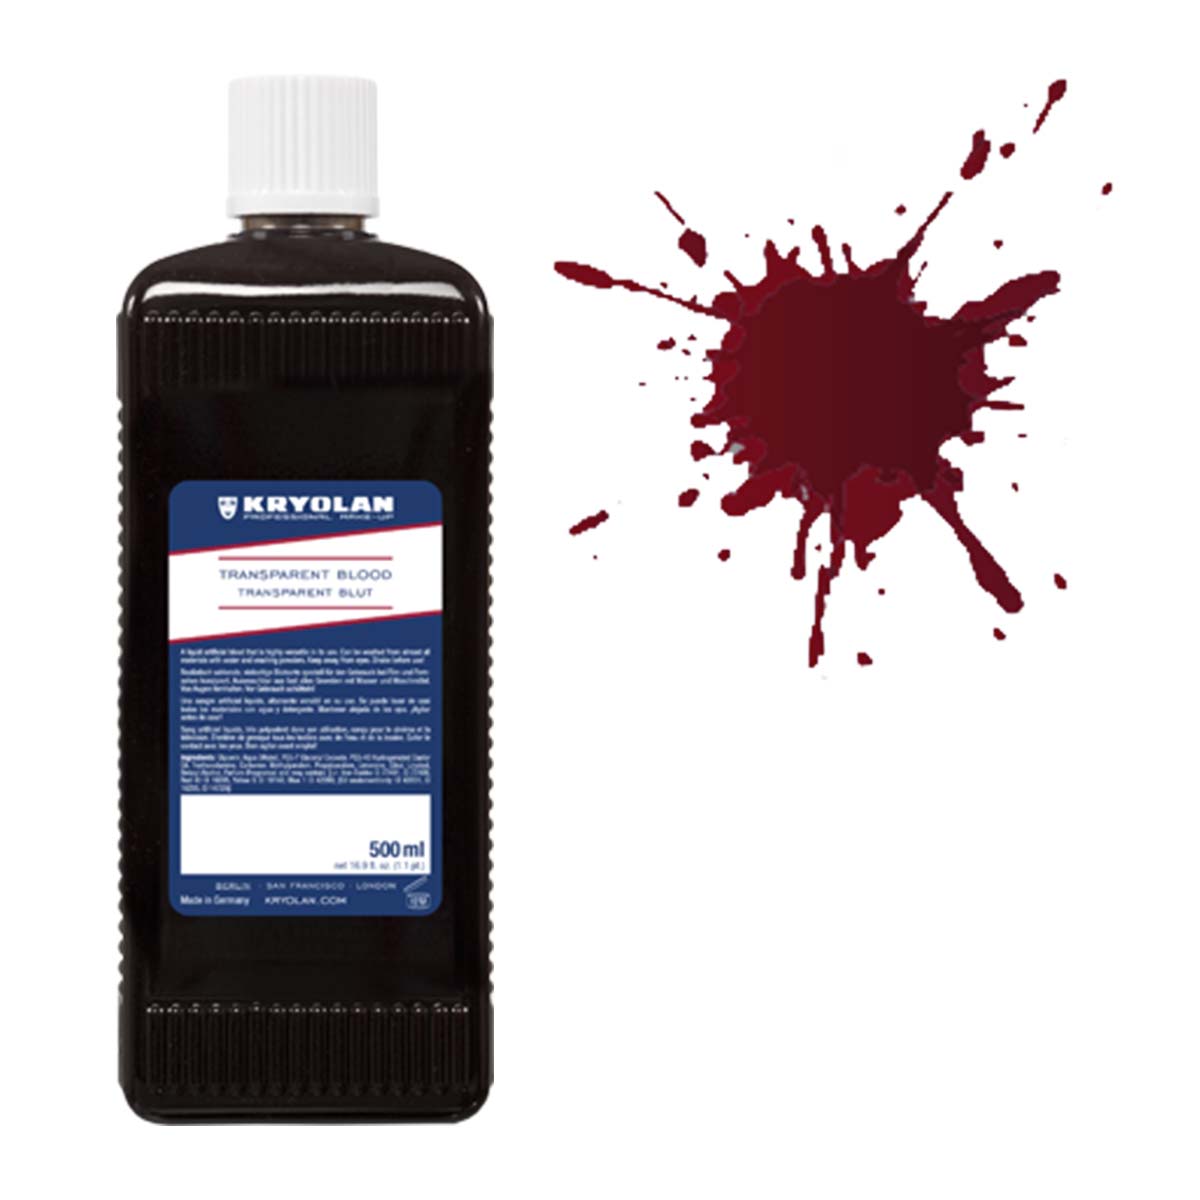 Blod 500 ml transparent Kryolan-Mörk